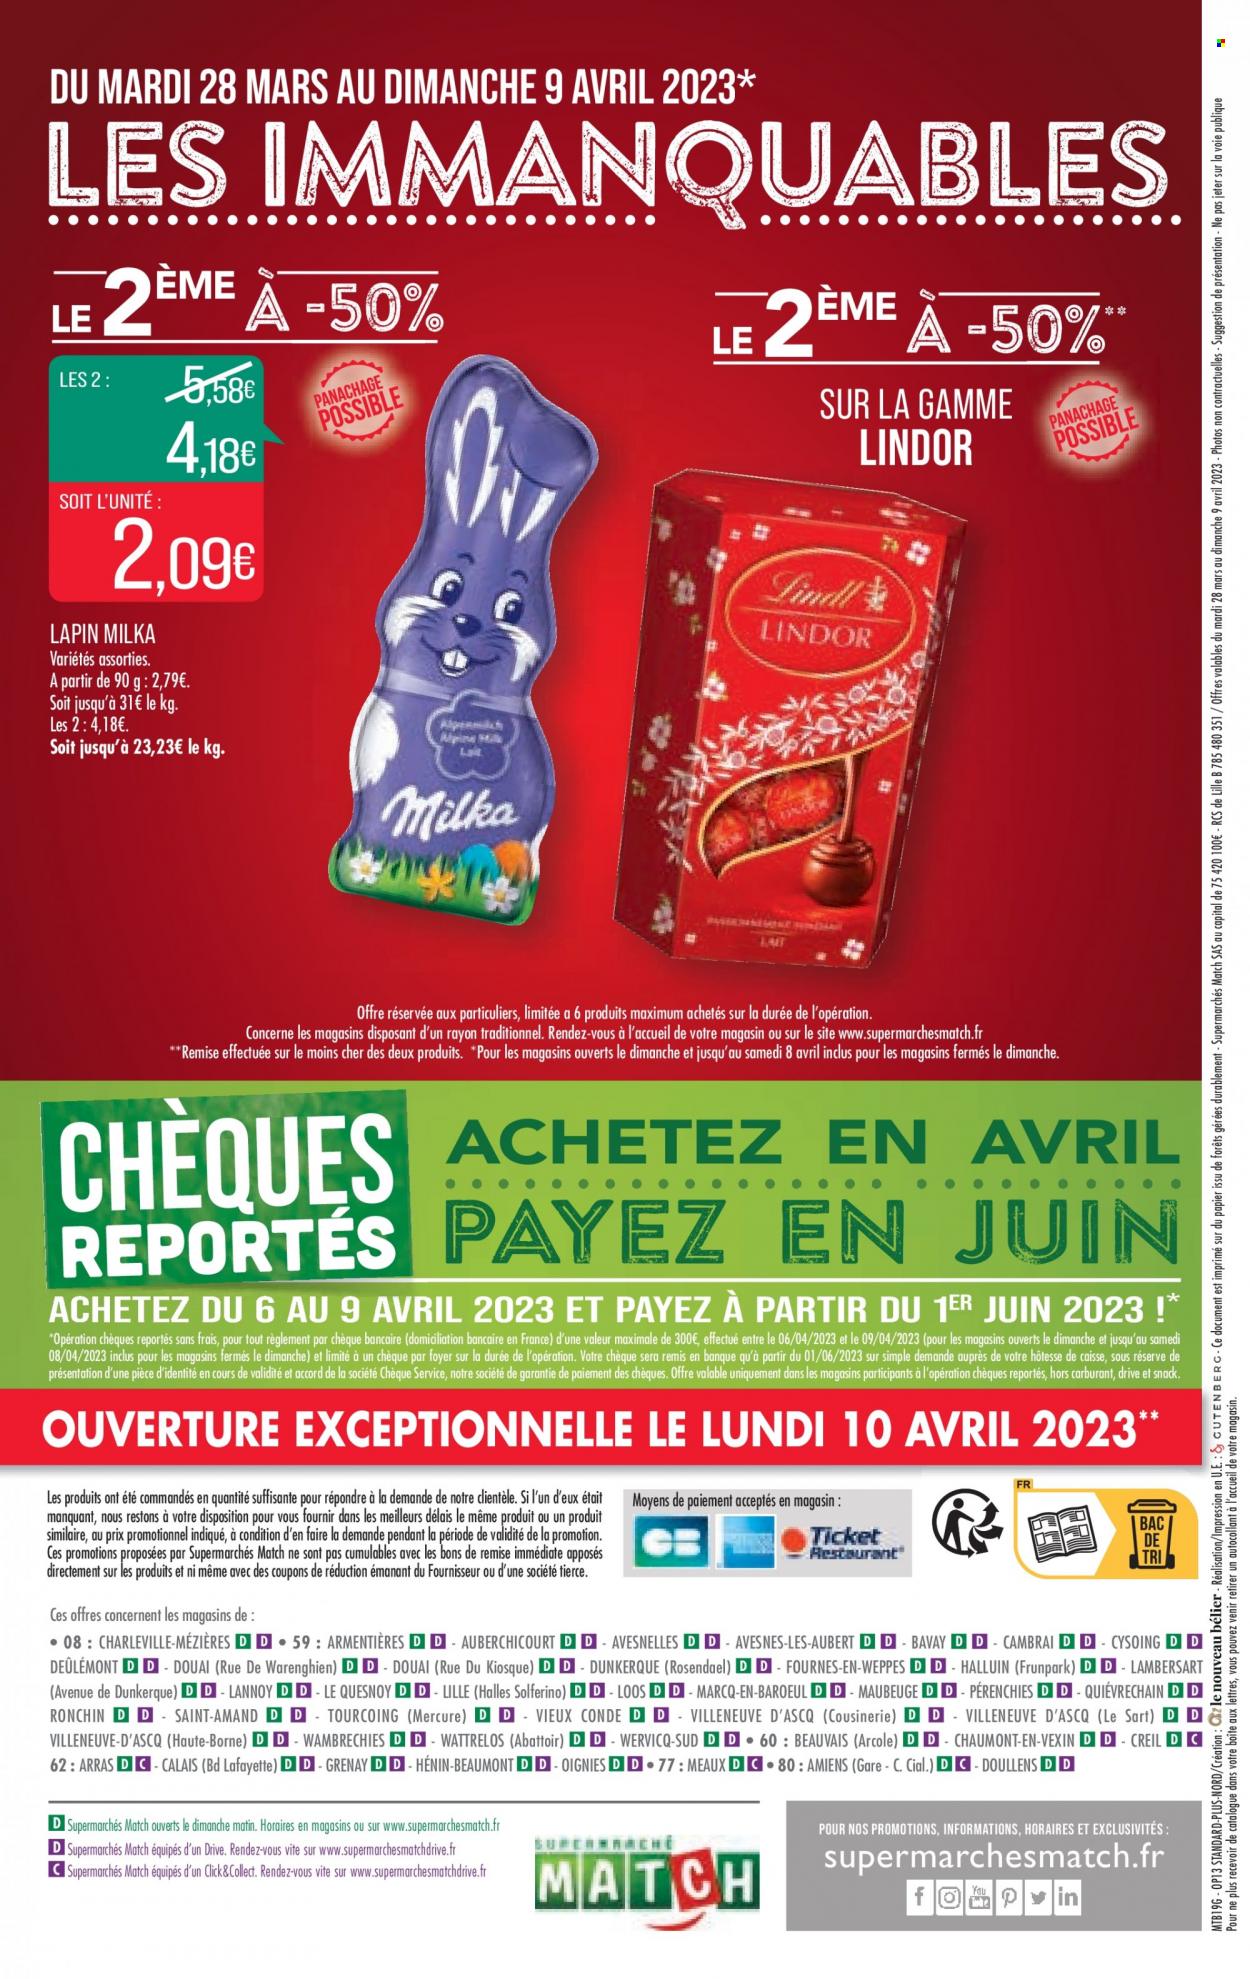 Catalogue Supermarché Match - 28.03.2023 - 09.04.2023. 